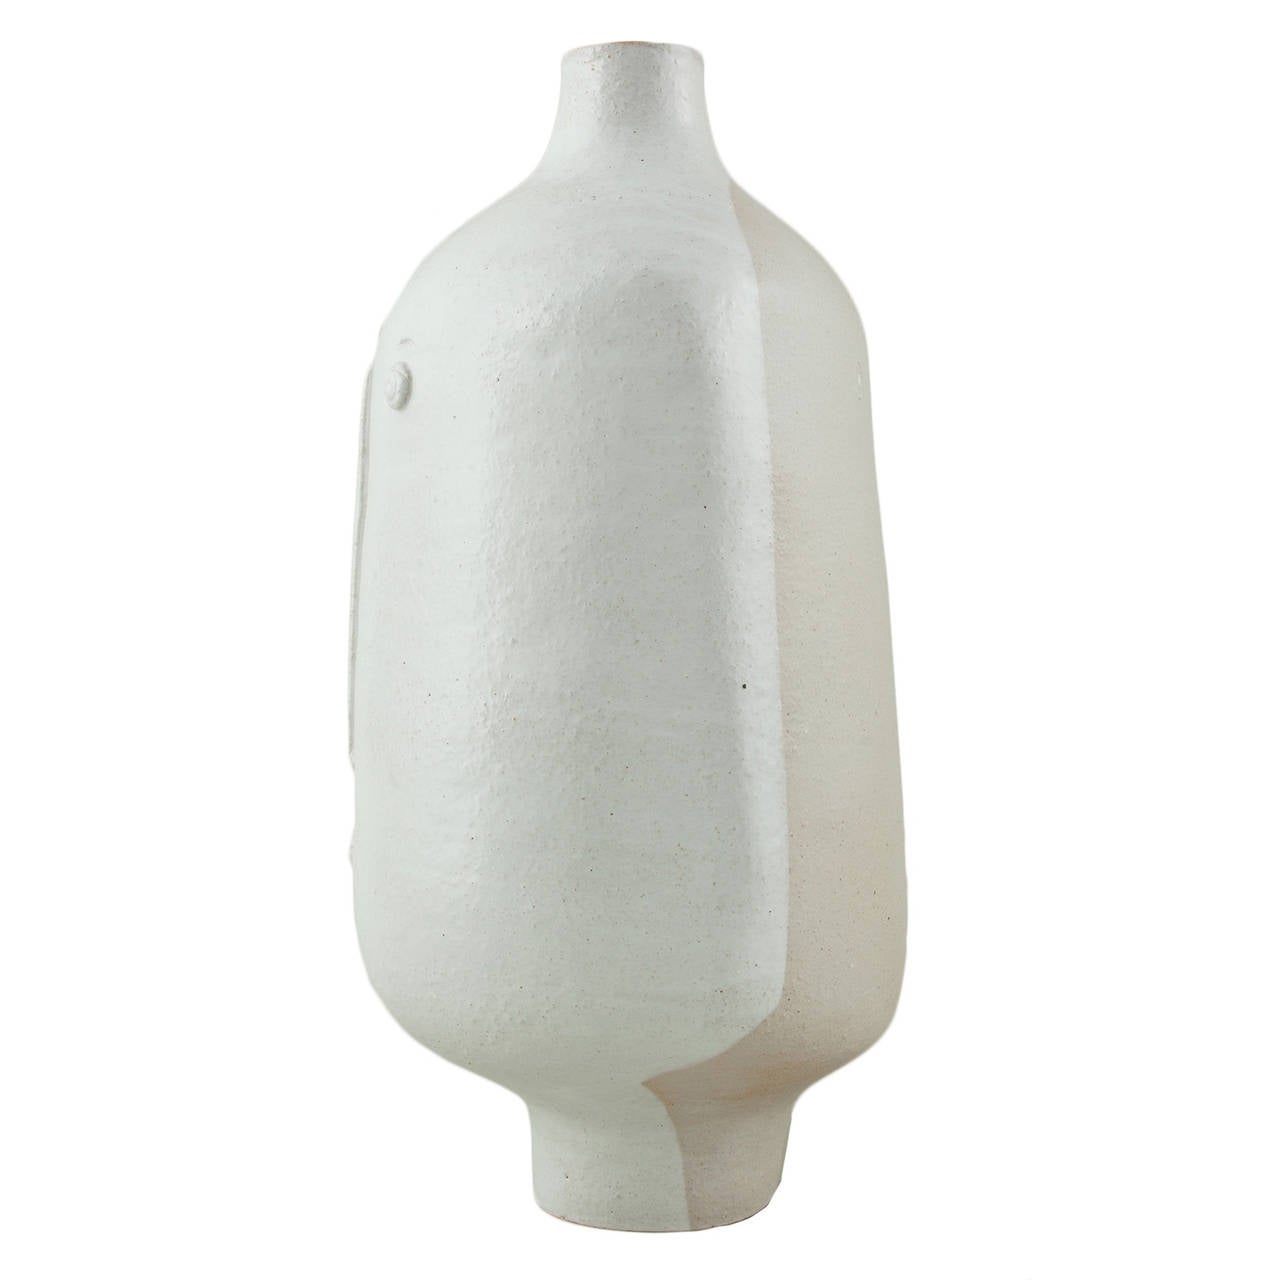 White Enameled Stoneware Lamp by Dalo, 2014. Unique piece.

Dimensions: H 61 cm - W 37 cm - D 32 cm

Dalo is a ceramic work­shop that reunites Paris ceramists Daniel and Loïc under a com­mon con­cept and know-how. Instantly rec­og­niz­able in